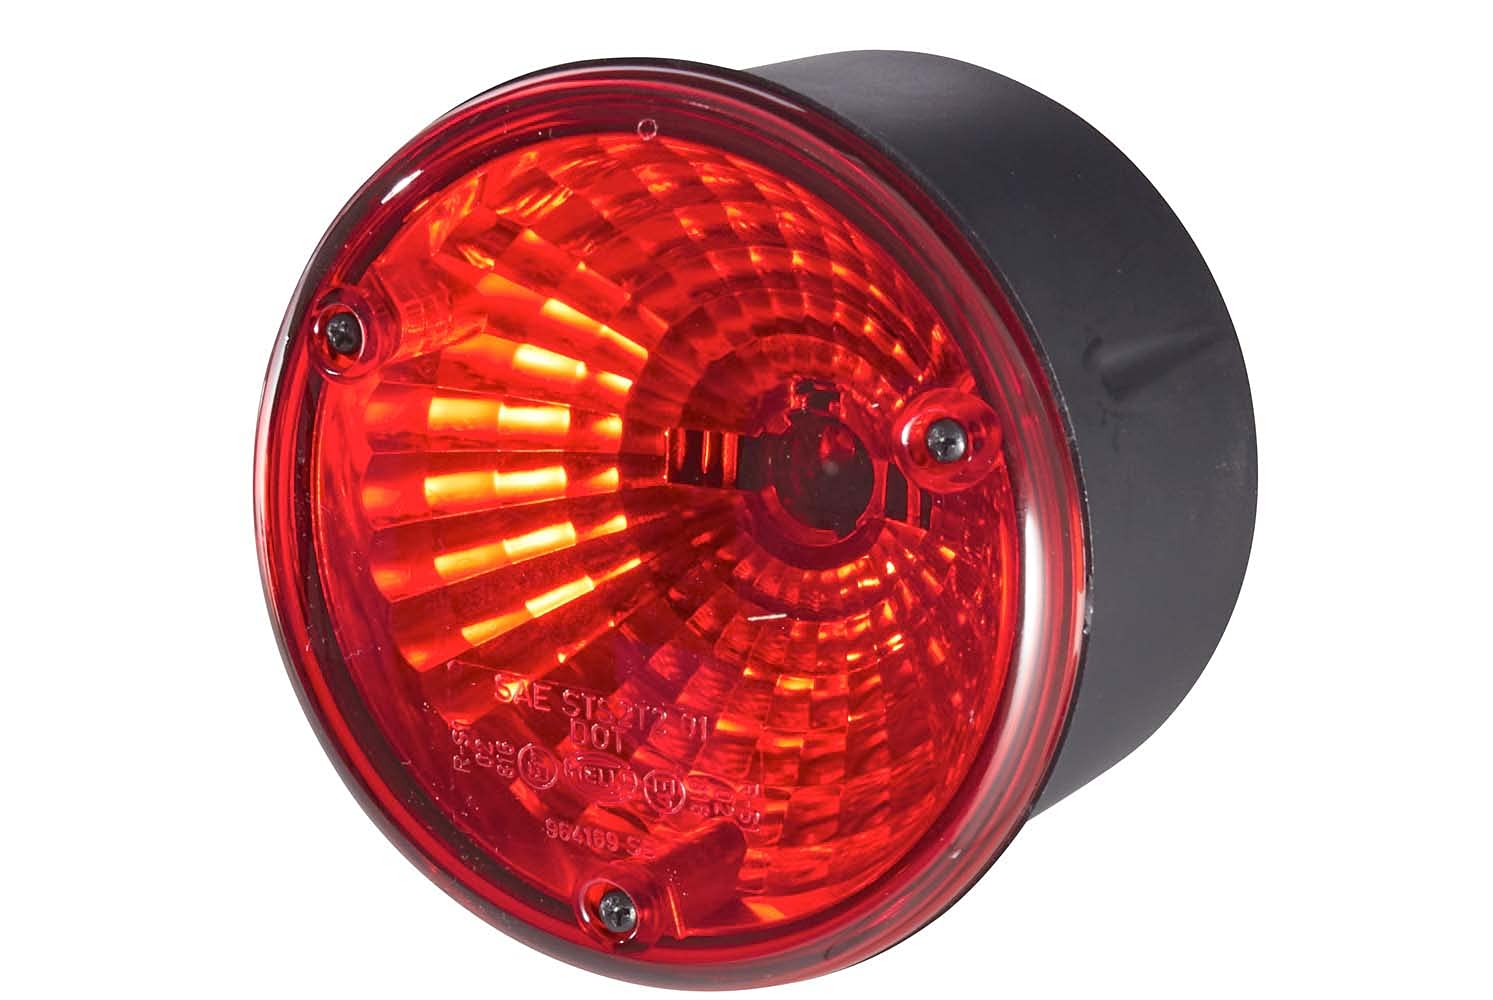 HELLA Rückleuchte - Glühlampe - Anhänger Beleuchtung - 12V / 24V - Anbau/geschraubt - ECE/ADR/GGVS - Lichtscheibenfarbe: rot - Stecker: Flachstecker - rechts/links - Menge: 1 - 2SB 964 169-531 von Hella